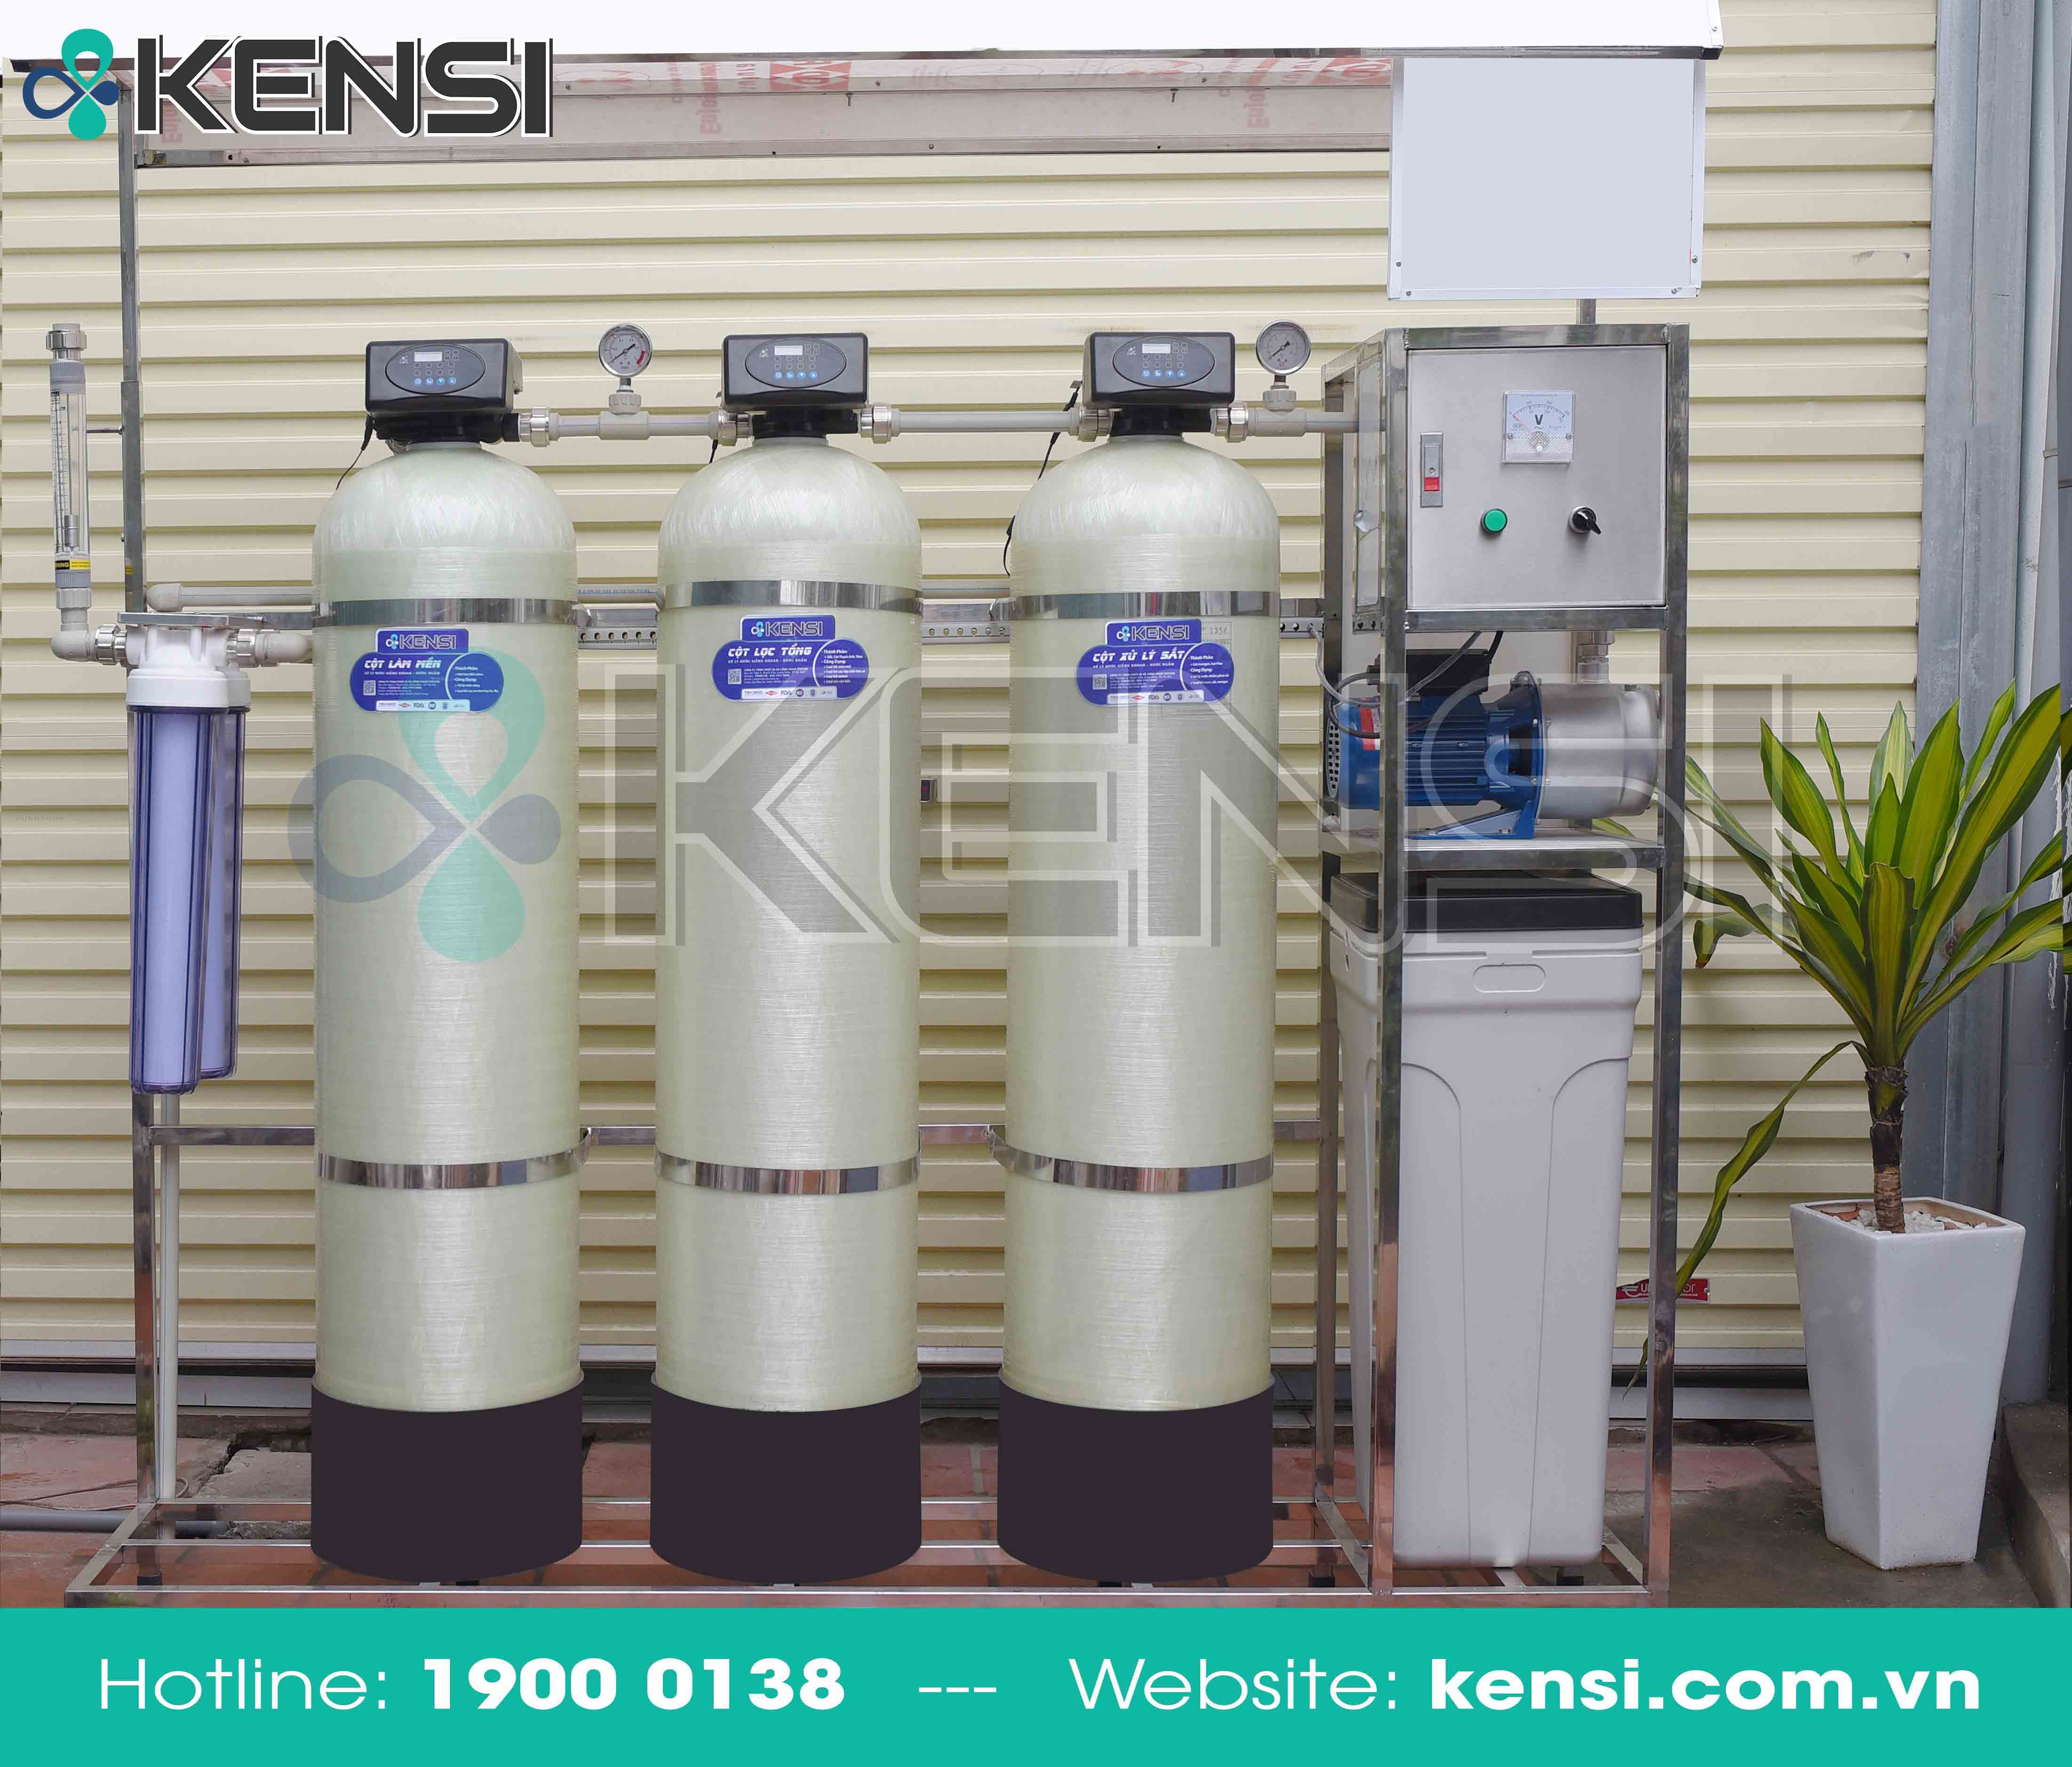 Hệ thống máy lọc nước công nghiệp do Tekcom thi công lắp đặt